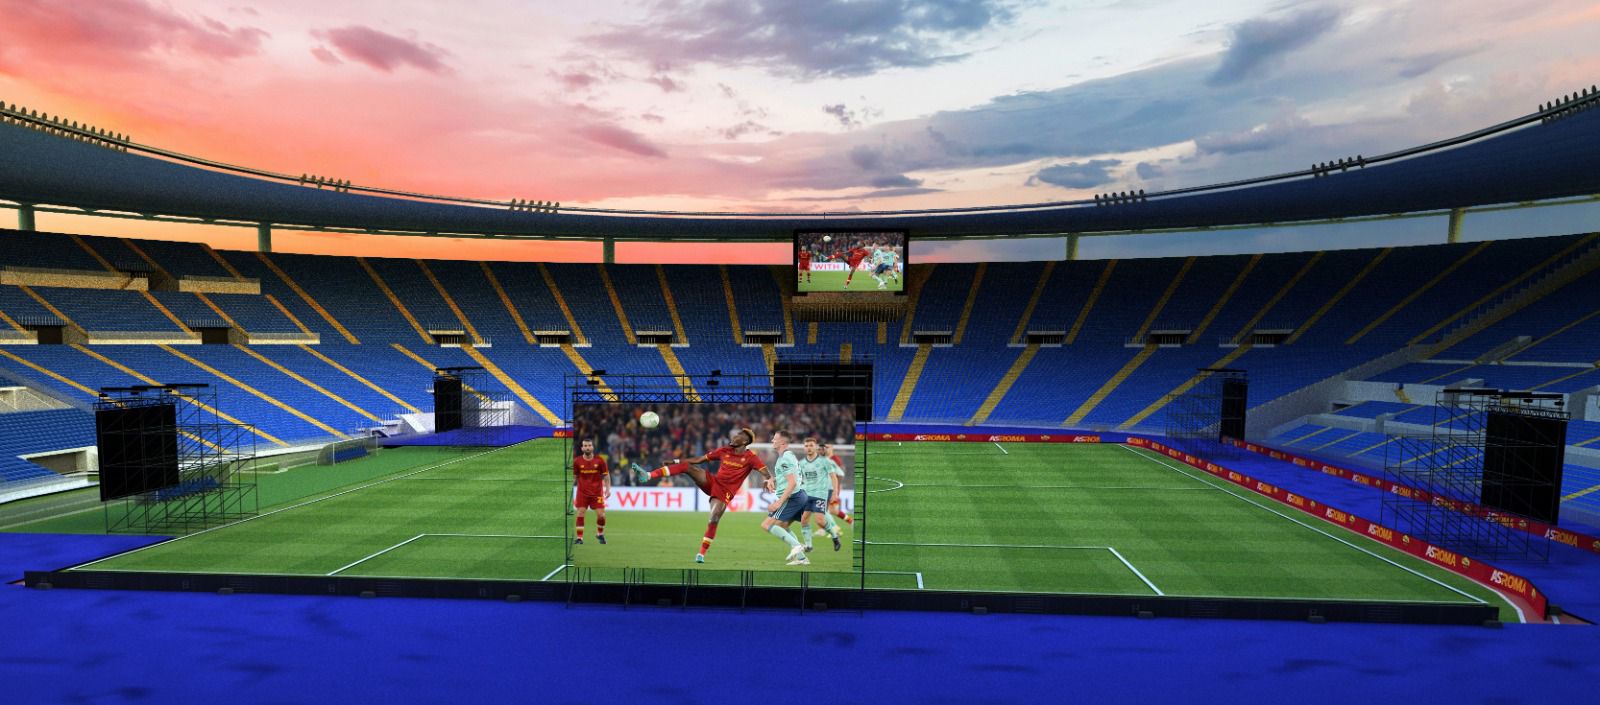 Roma-Feyenoord, schermi e fontane blindati per la finale - Retesport 104.2  FM